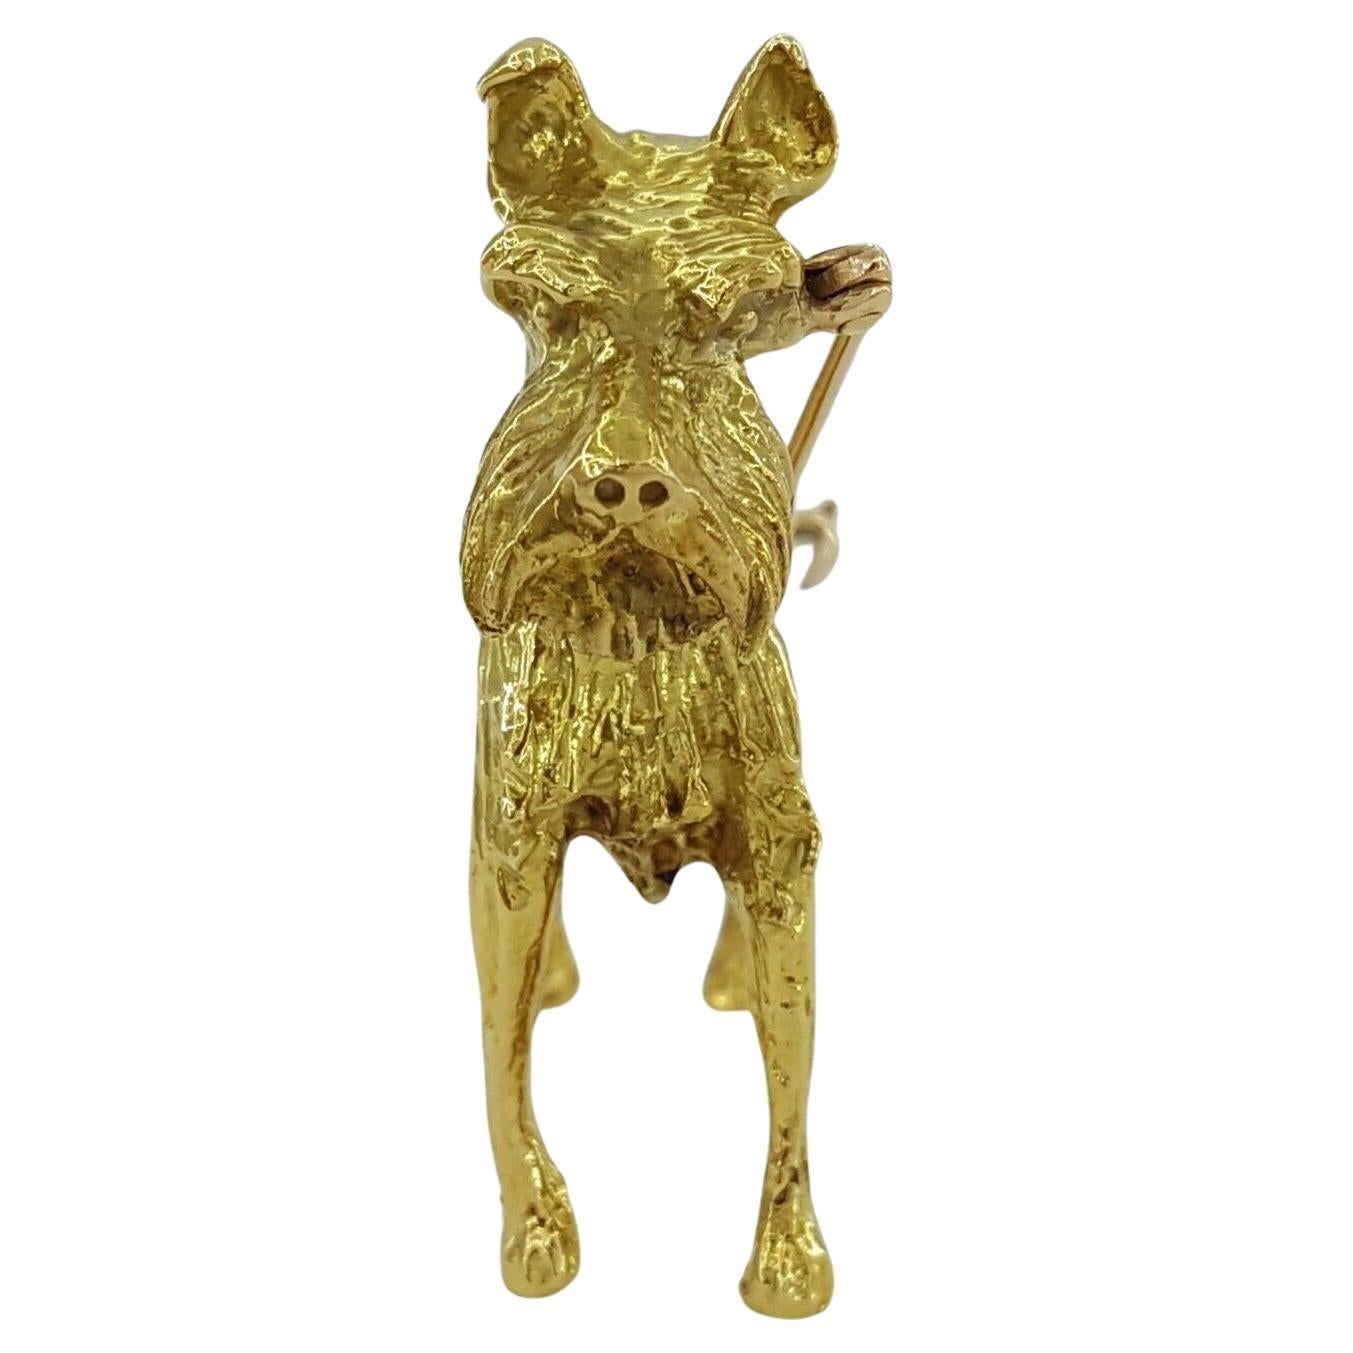 Broche / épingle Vintage Tiffany & Co. en or jaune 18 carats représentant un chien terrier.



La broche pèse 28,8 grammes, 47 mm de large et 41 mm de haut.



La broche est estampillée 